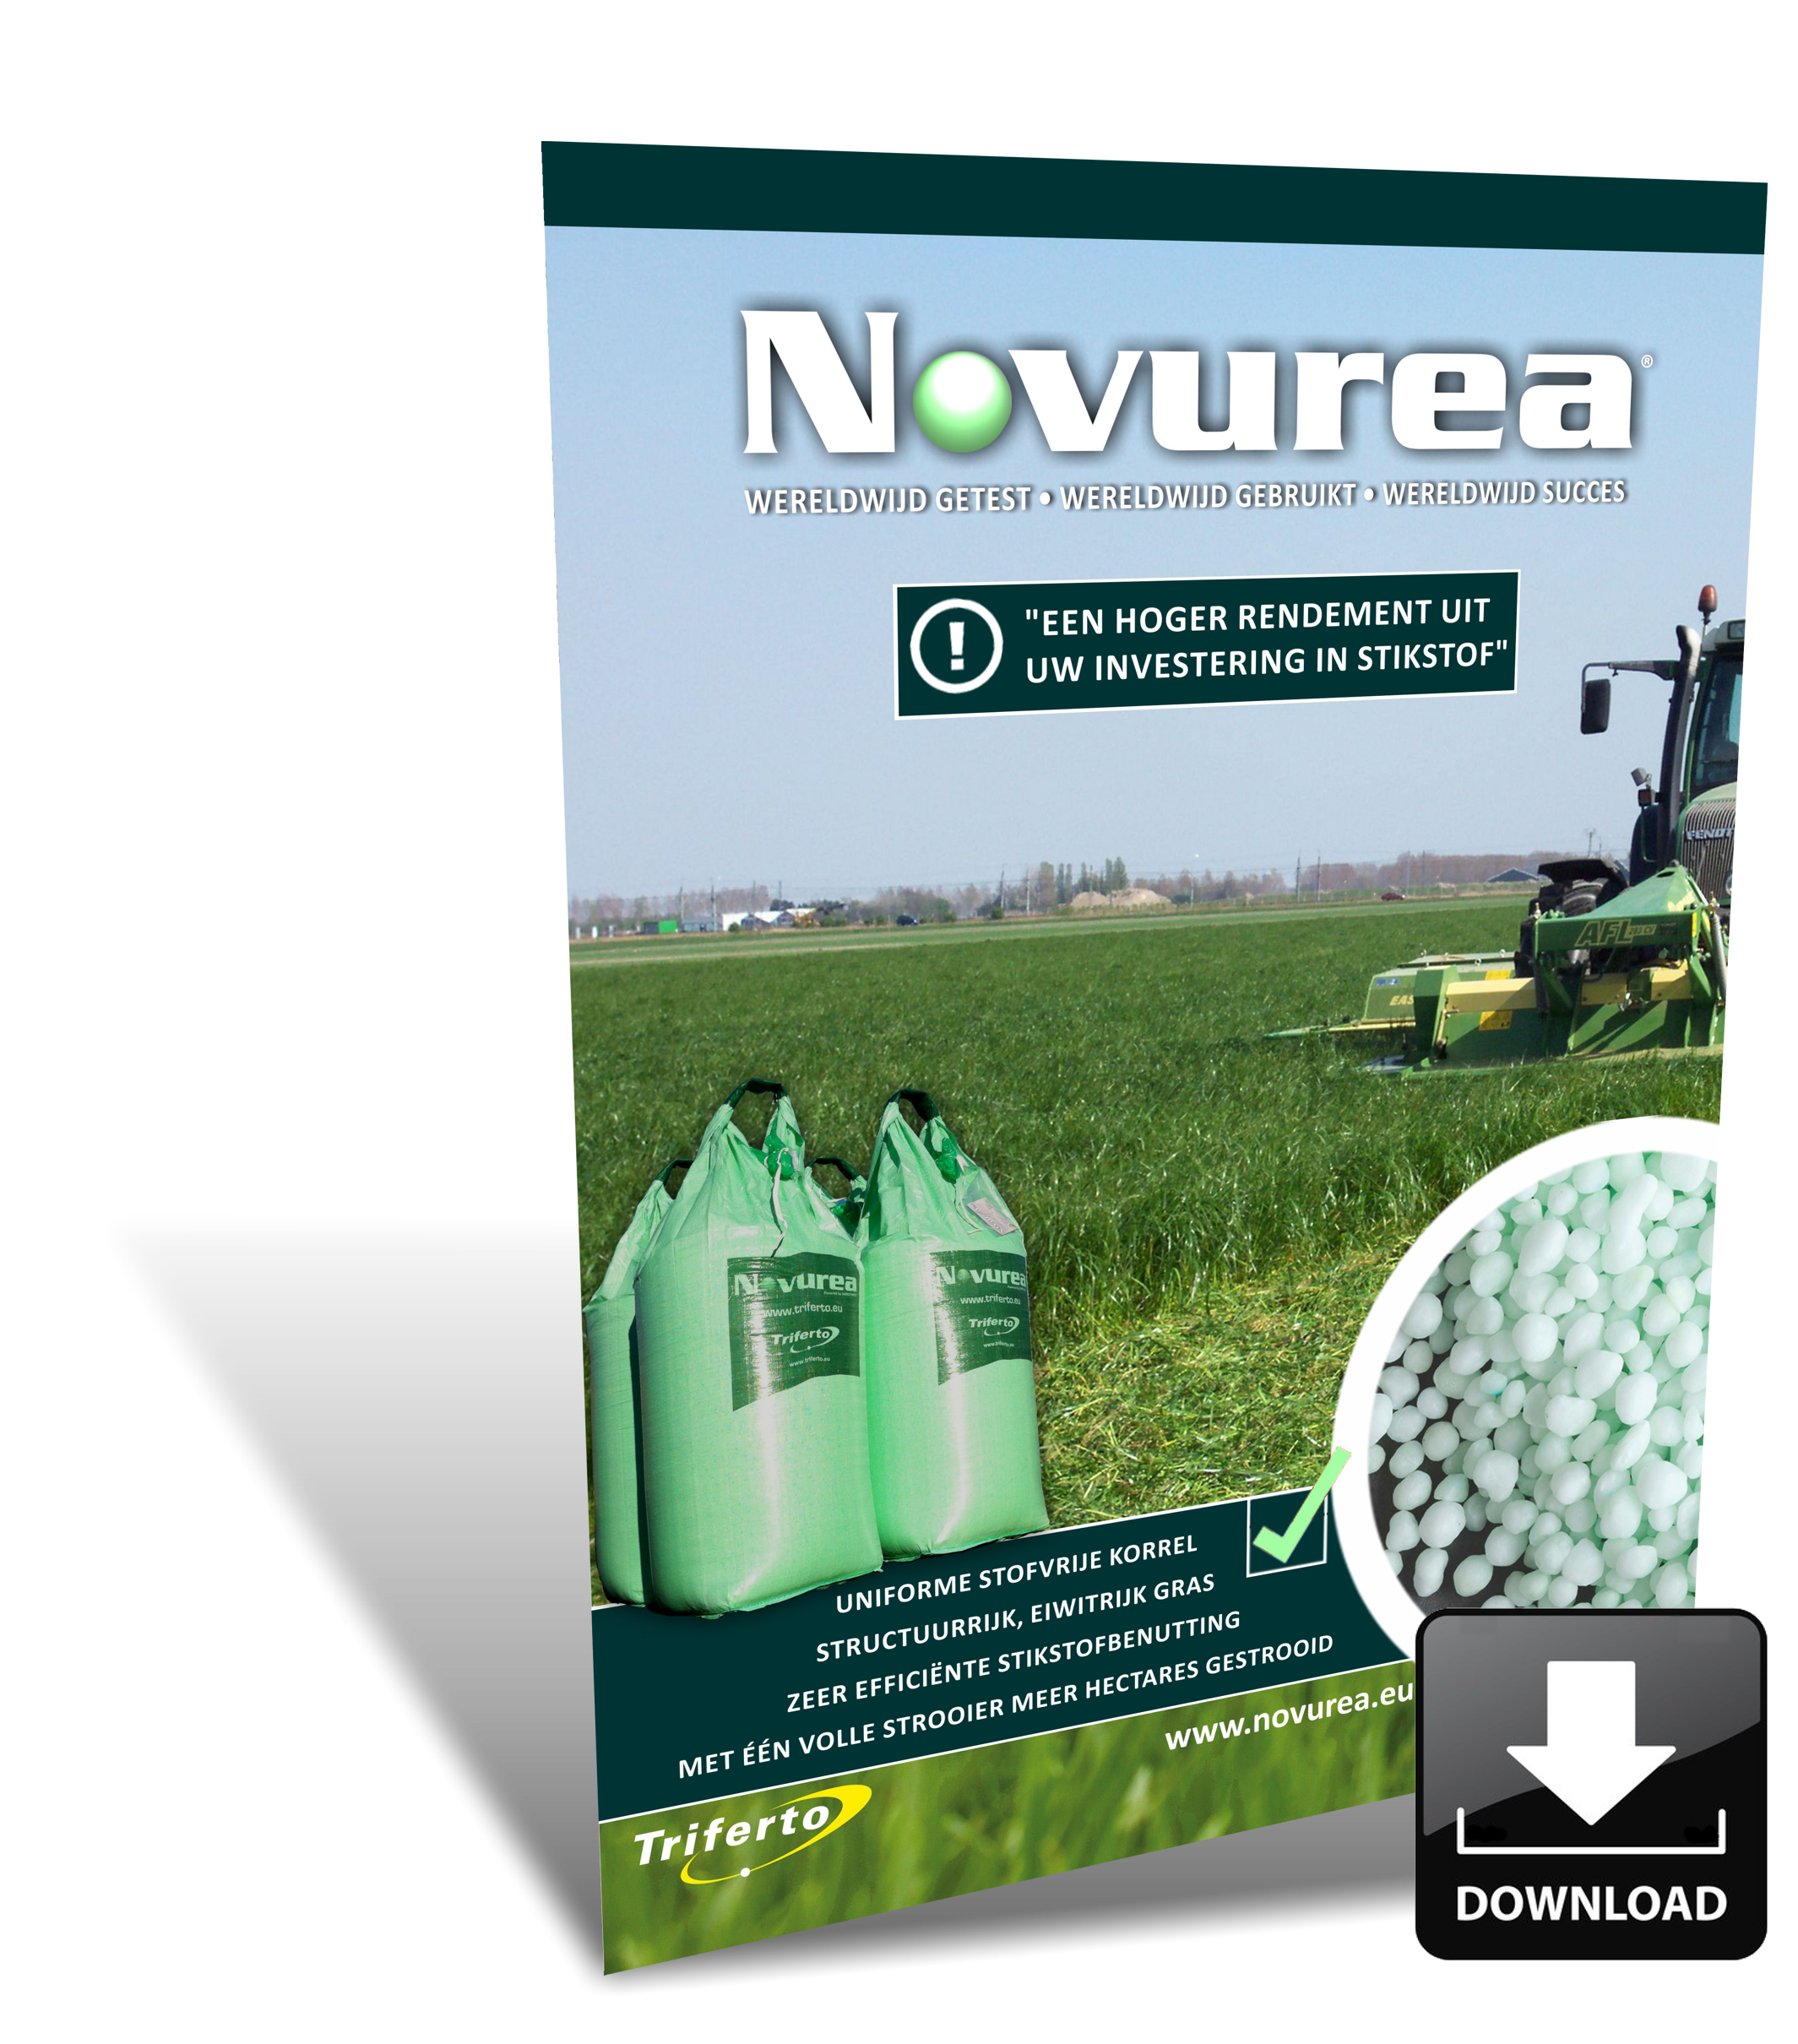 Novurea brochure